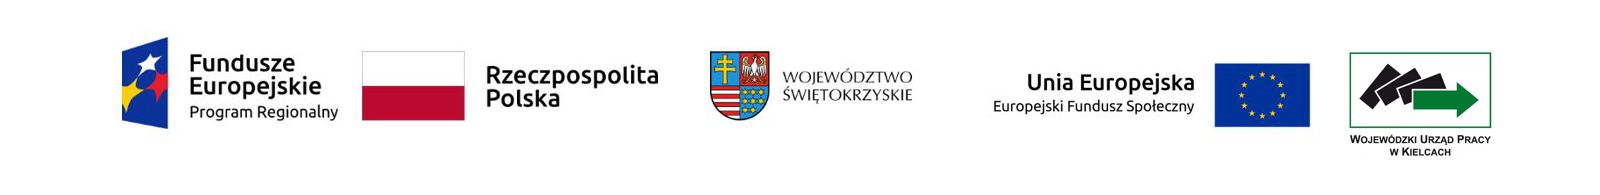 logo miasta kielc flagi Polski oraz województwa świętokrzyskiego kursy szkolnenia online stacjonarne